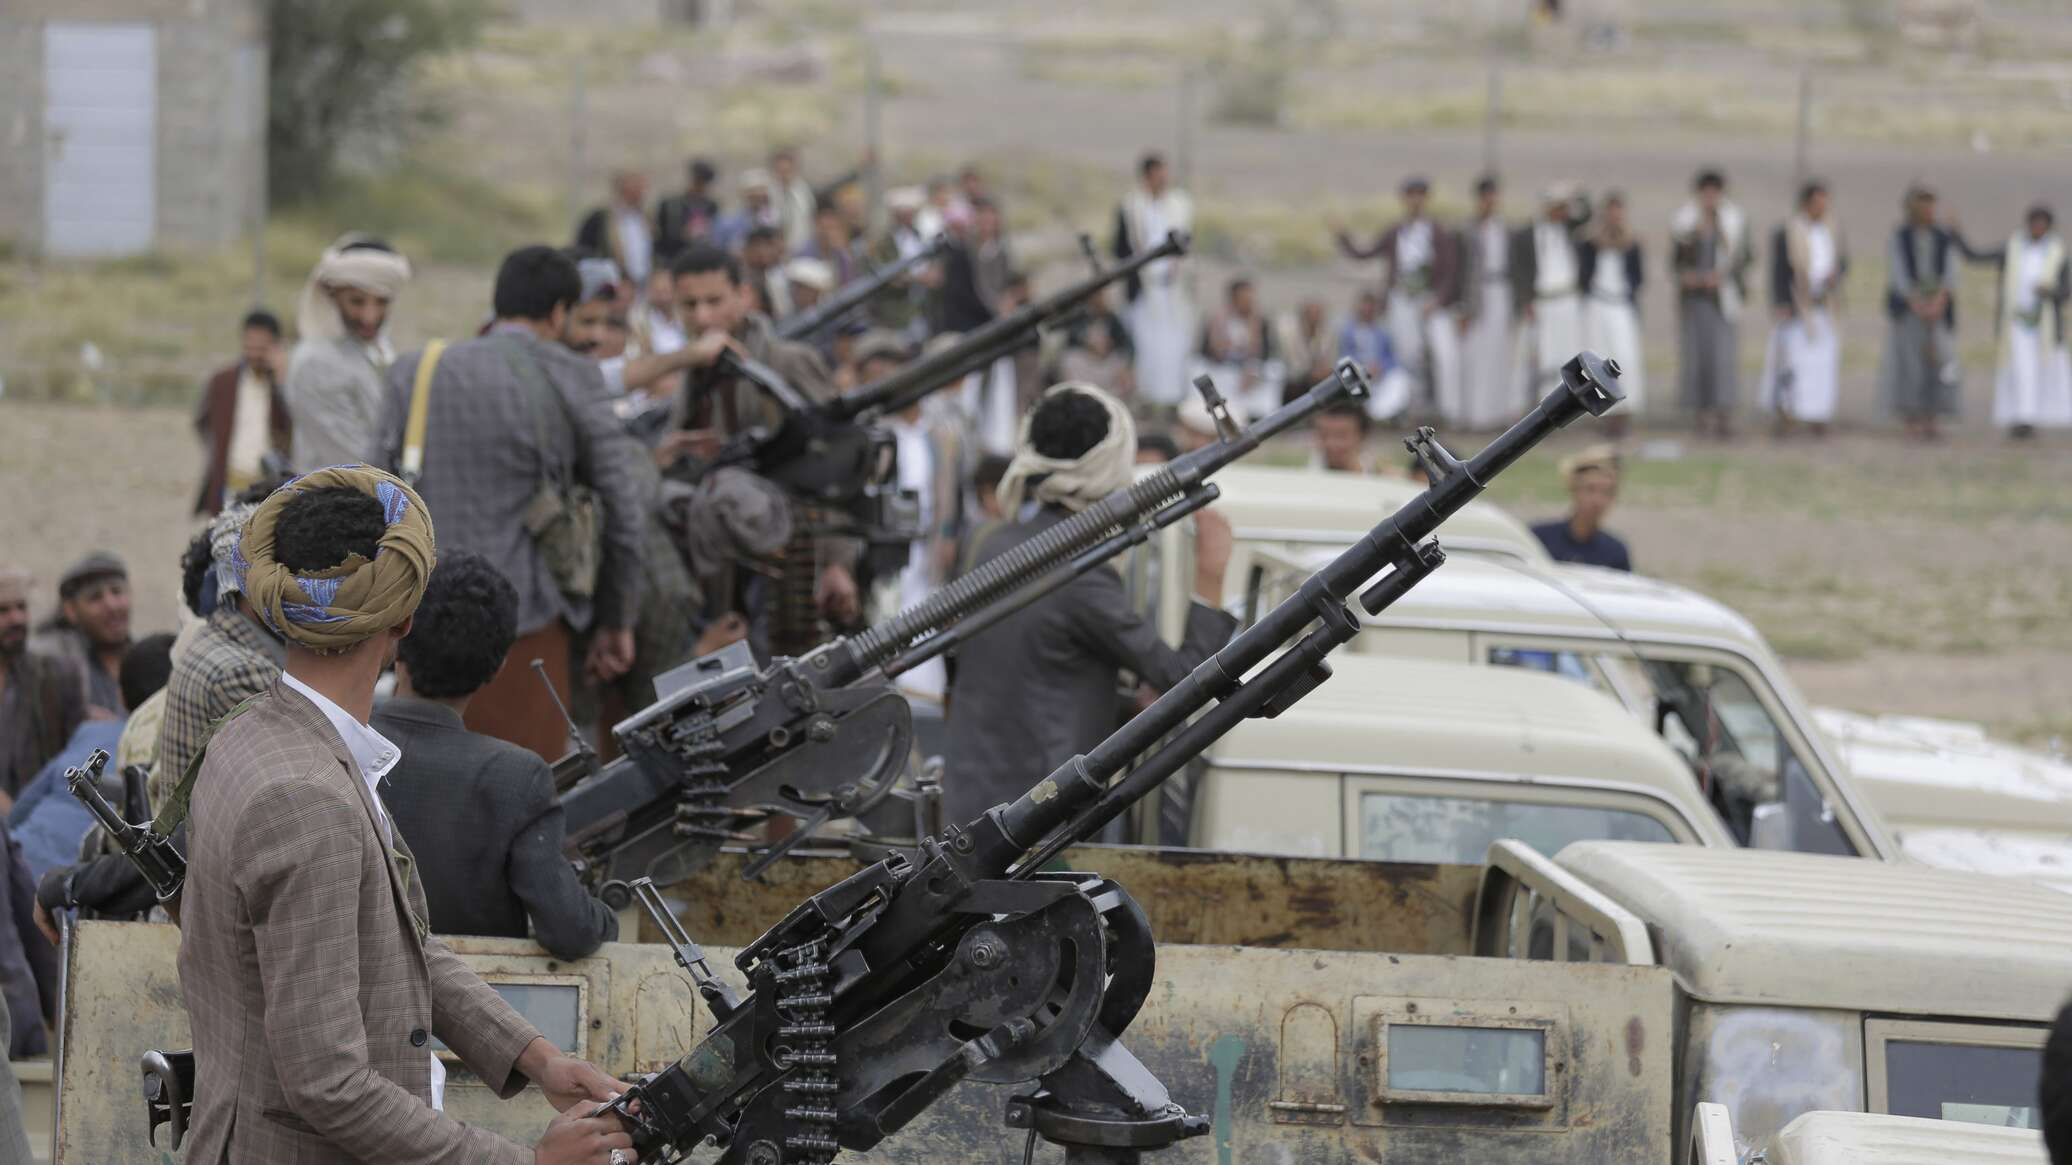 واشنطن تفرض عقوبات على أفراد وكيانات بزعم ارتباطهم بـ"أنصار الله" اليمنية